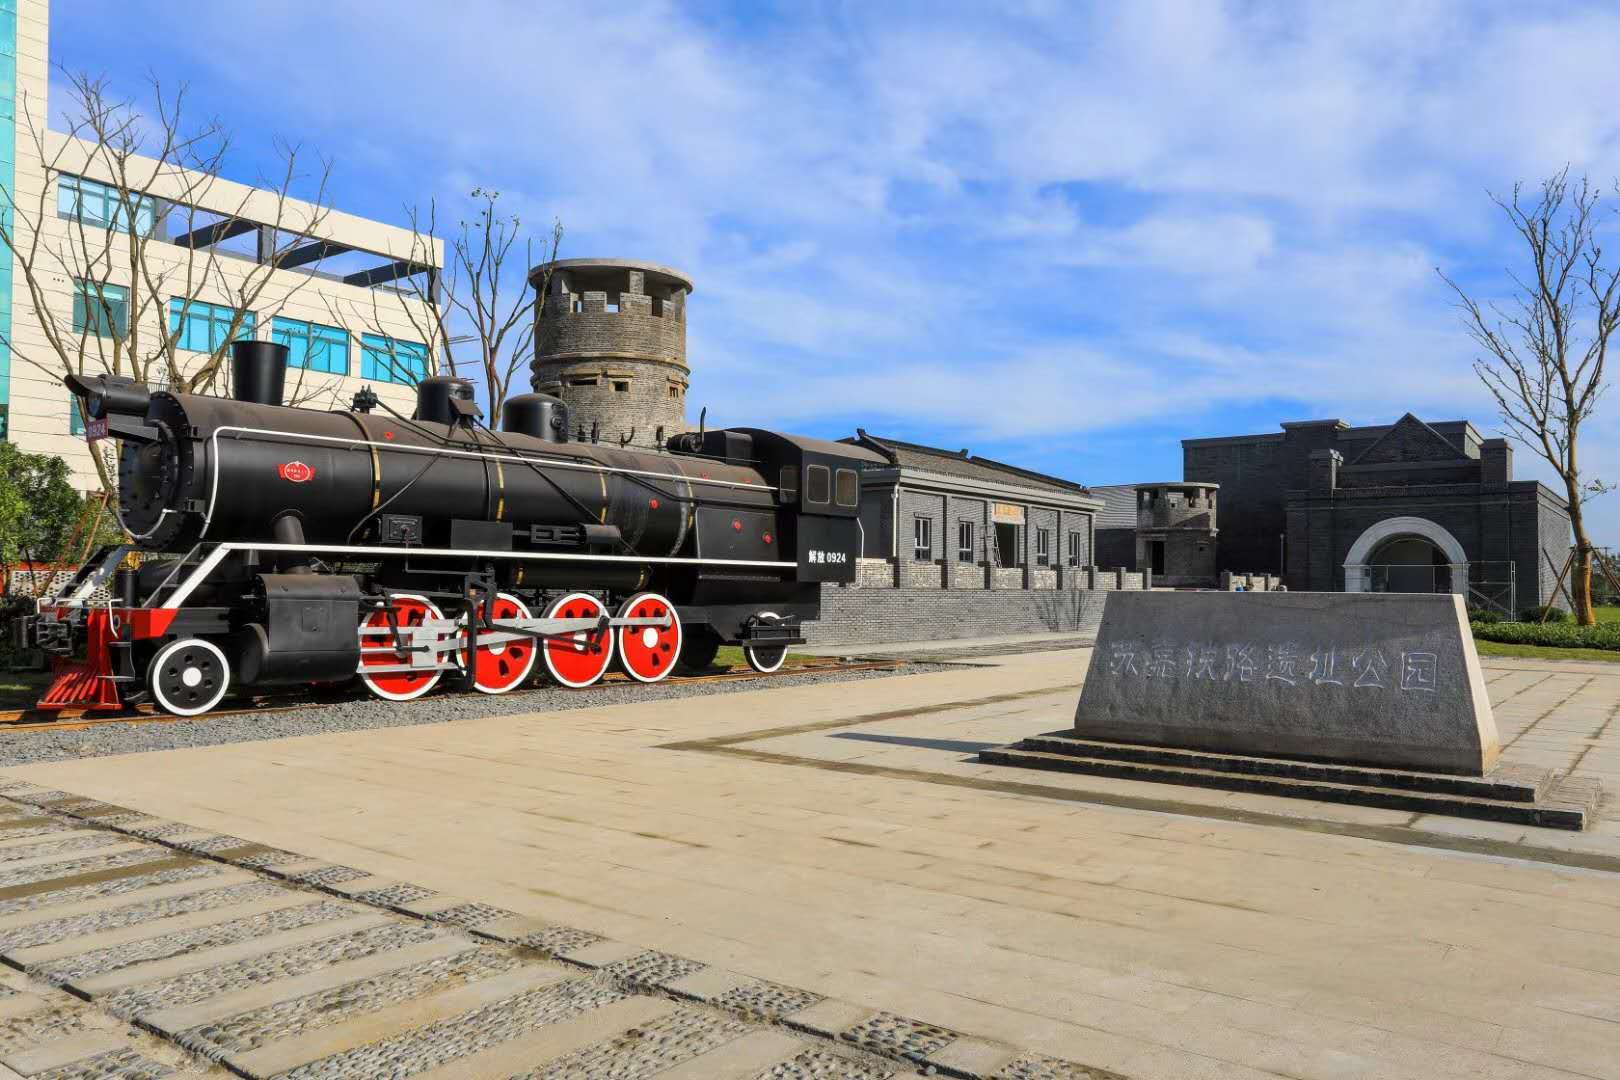 高清晰冒烟的复古蒸汽机火车